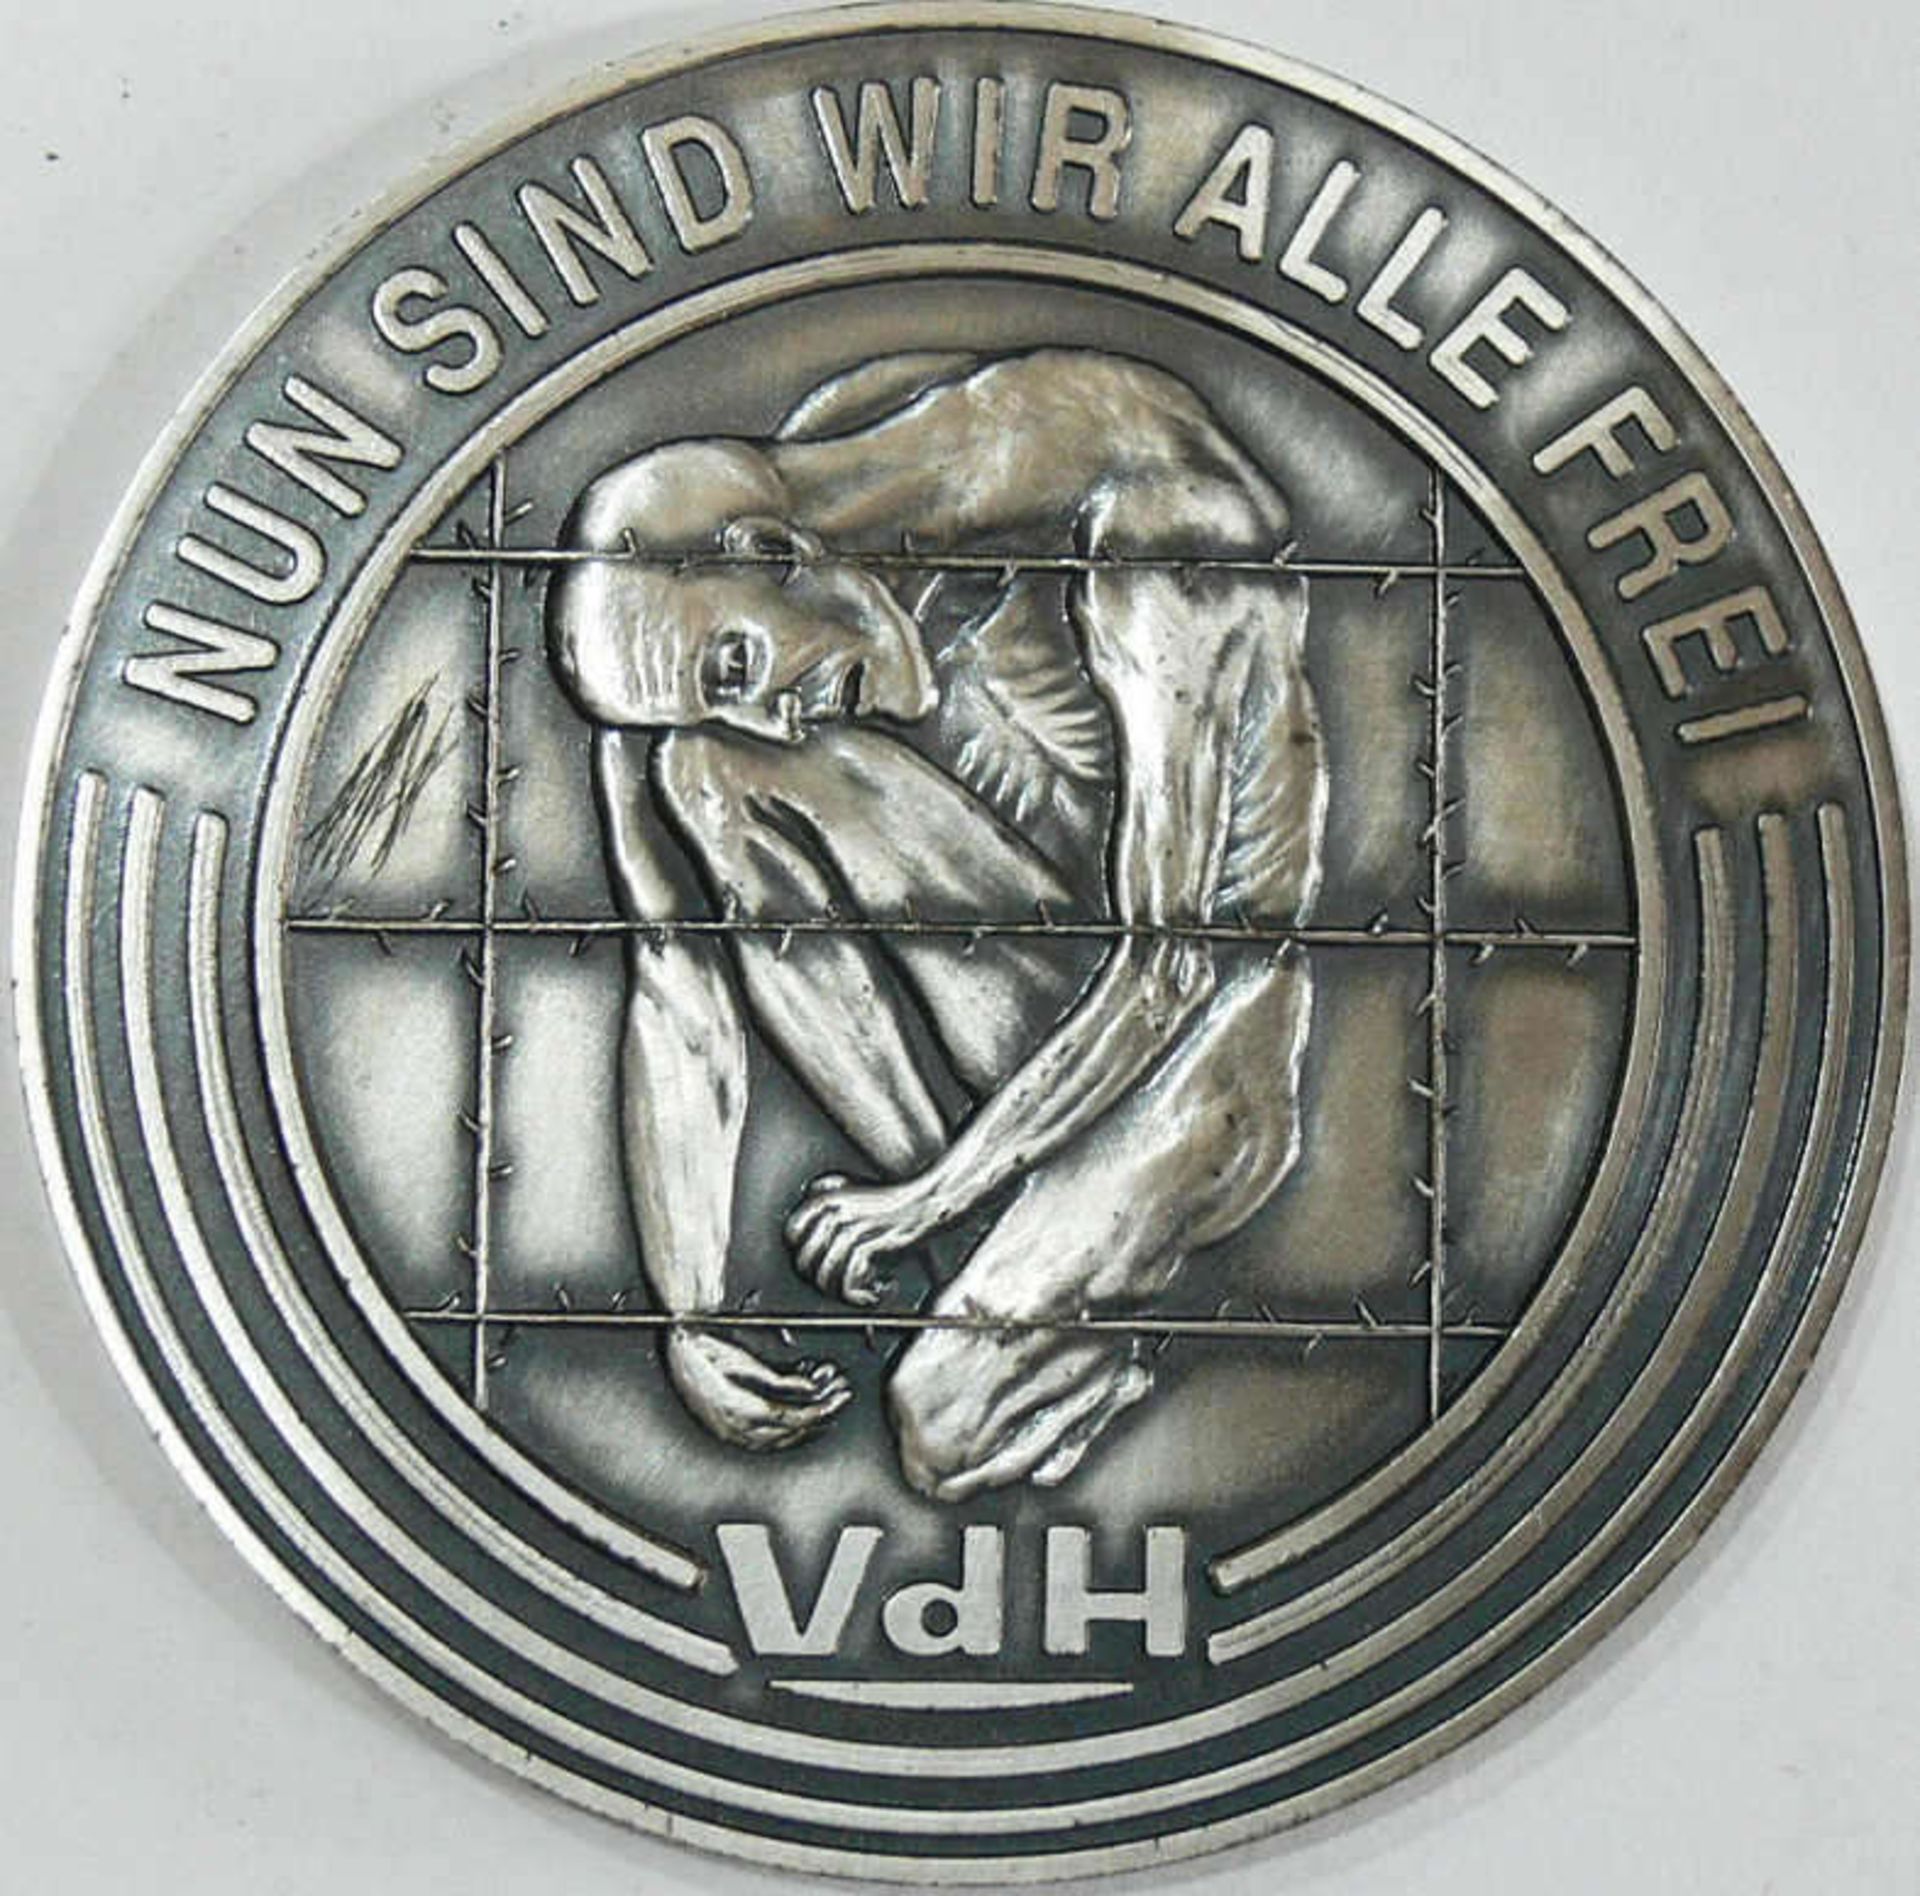 VdH - Medaille zur Erinnerung an die 40-Jahrfeier im Reichstag 1990. Metall. Durchmesser: ca. 80